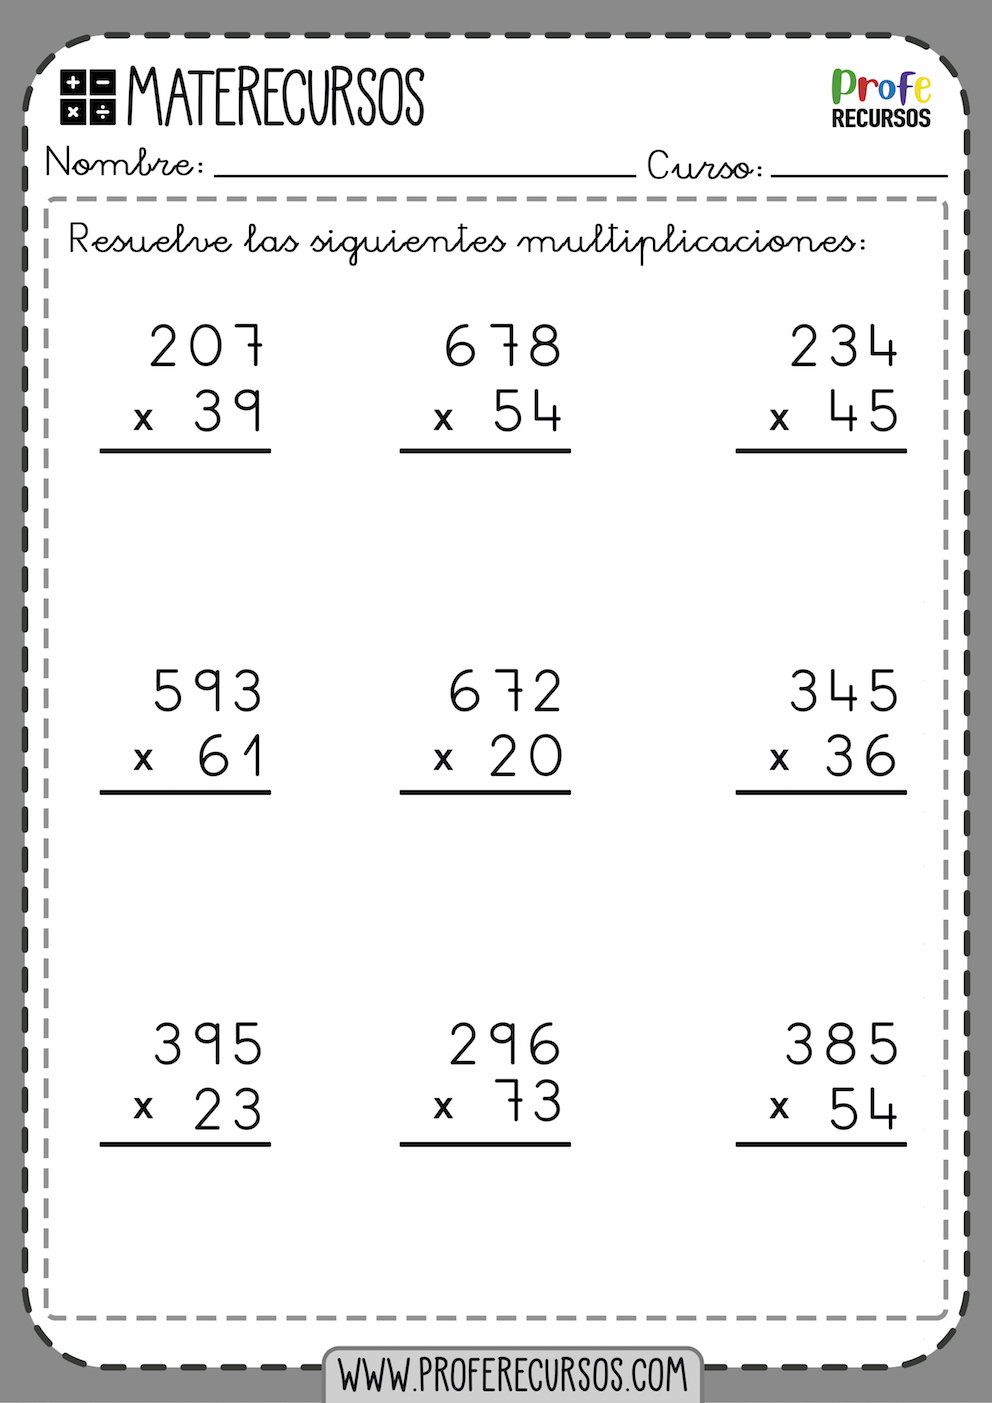 SOLUTION: Multiplicaciones multiplicaciones por 3 cifras 100